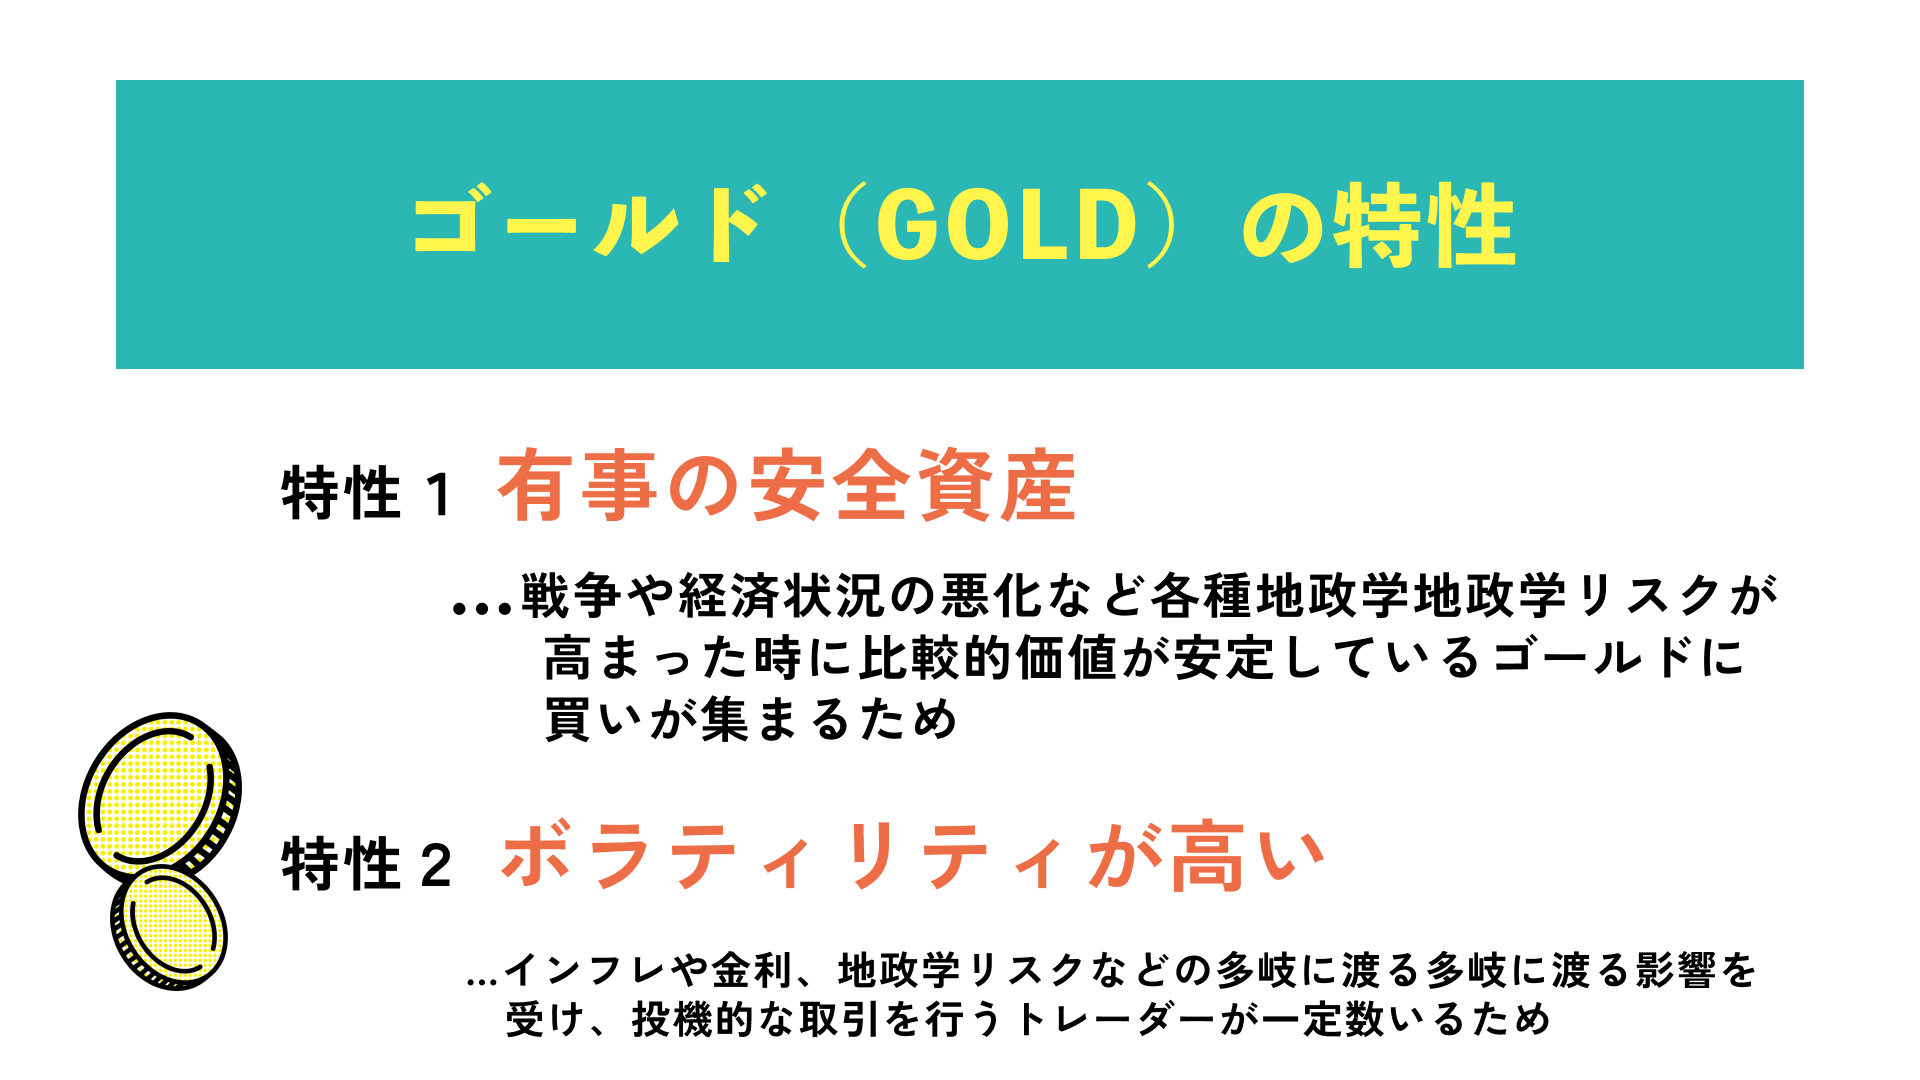 ゴールド(GOLD)の特性